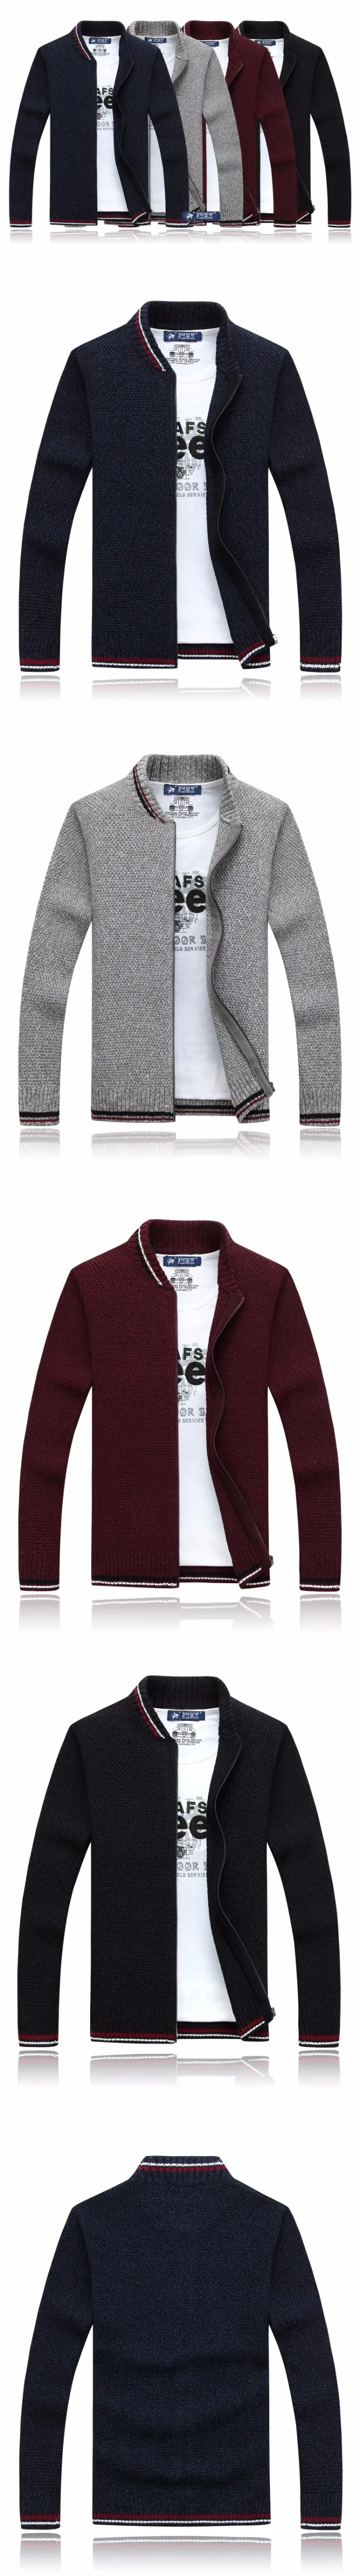 2019 модная зимняя куртка полосатый воротник-стойка свитер, мужской кардиган хлопок для мужчин брендовая одежда на молнии